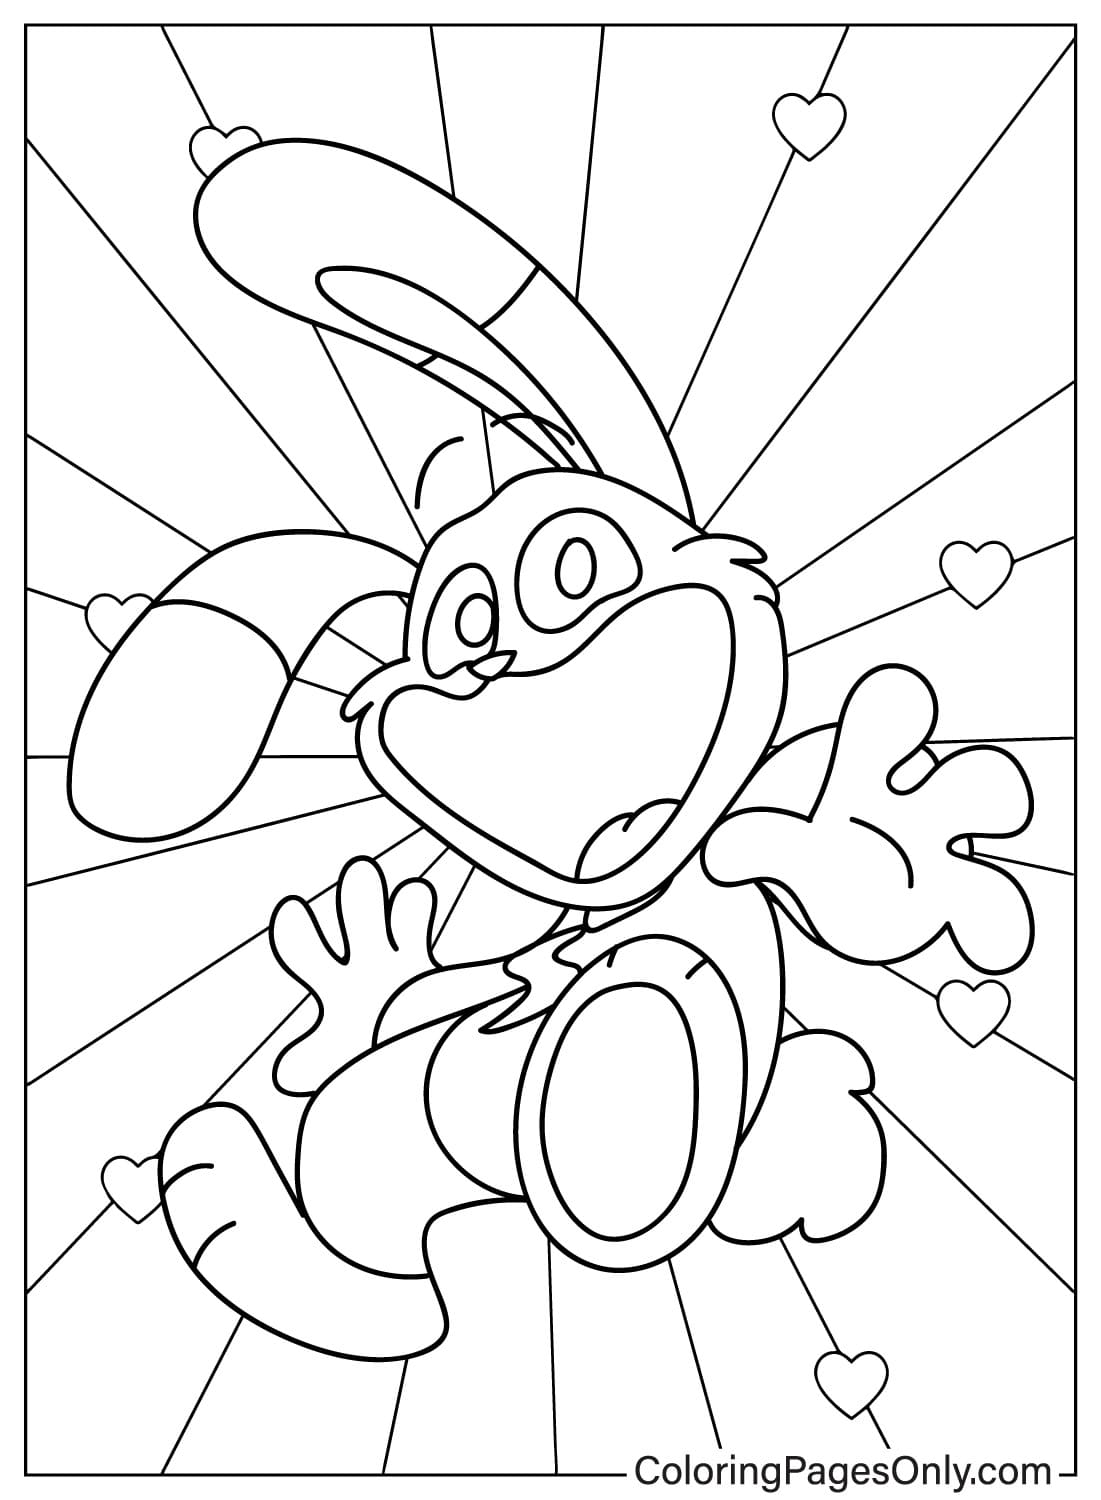 Página para colorir Hoppy Hopscotch de Smiling Critters